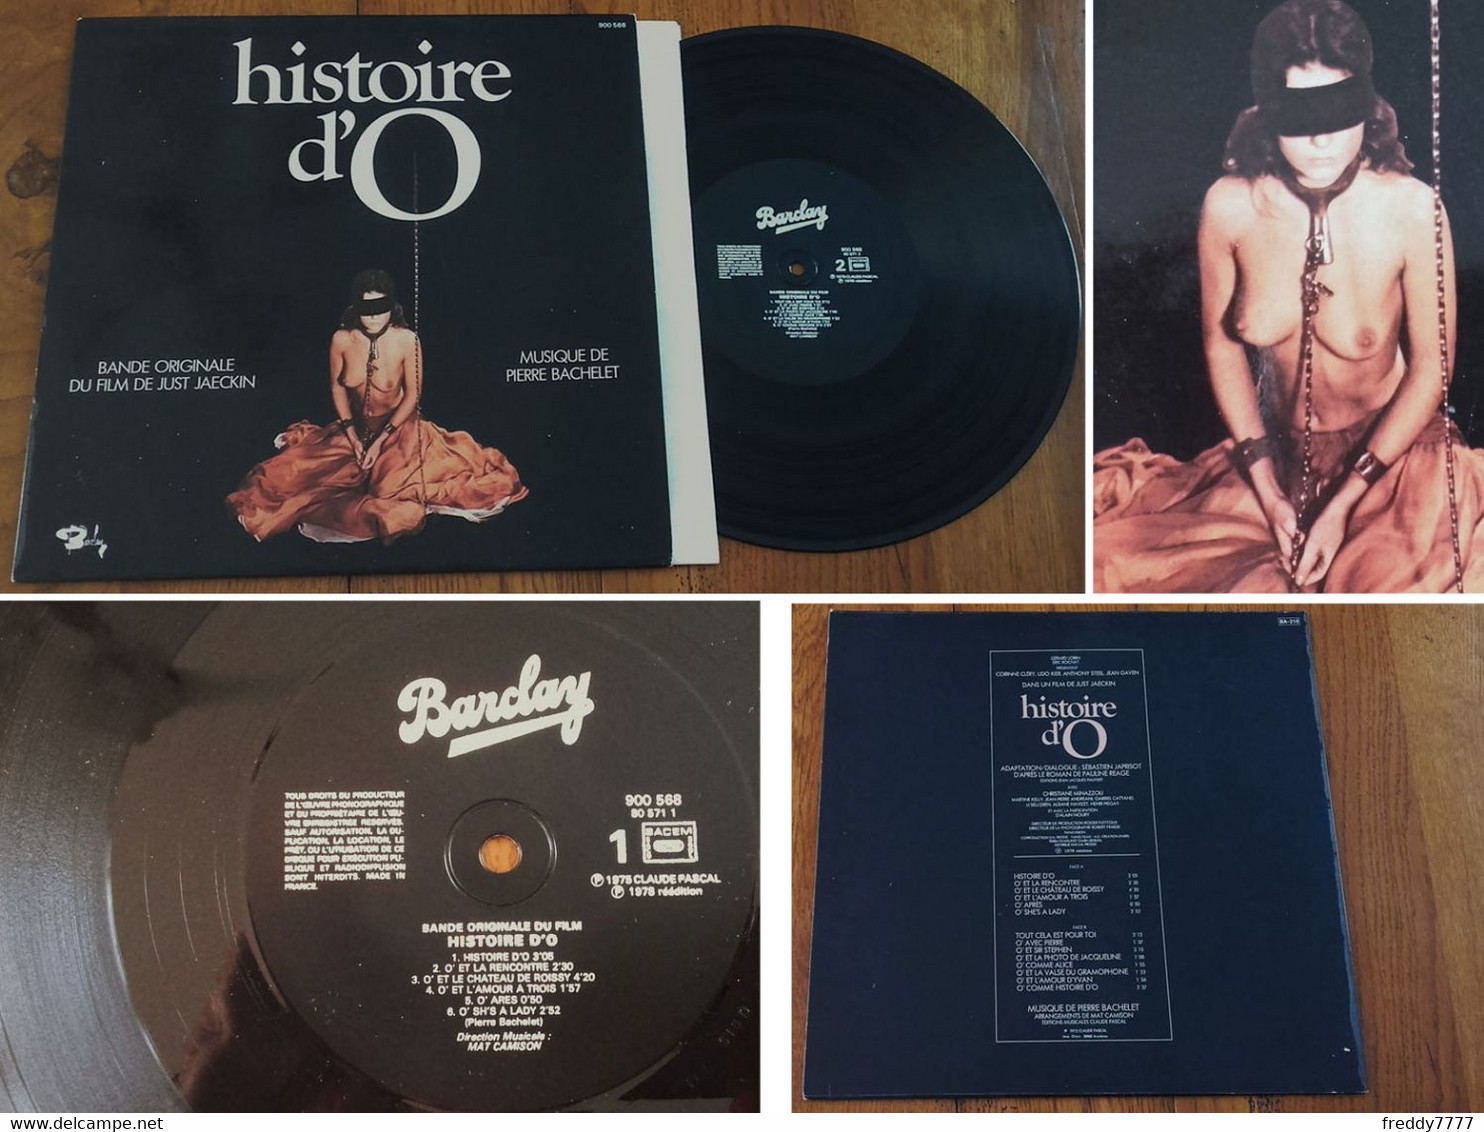 RARE French LP 33t RPM (12") "HISTOIRE D'O" (Sexy P/s, 1978) - Filmmusik